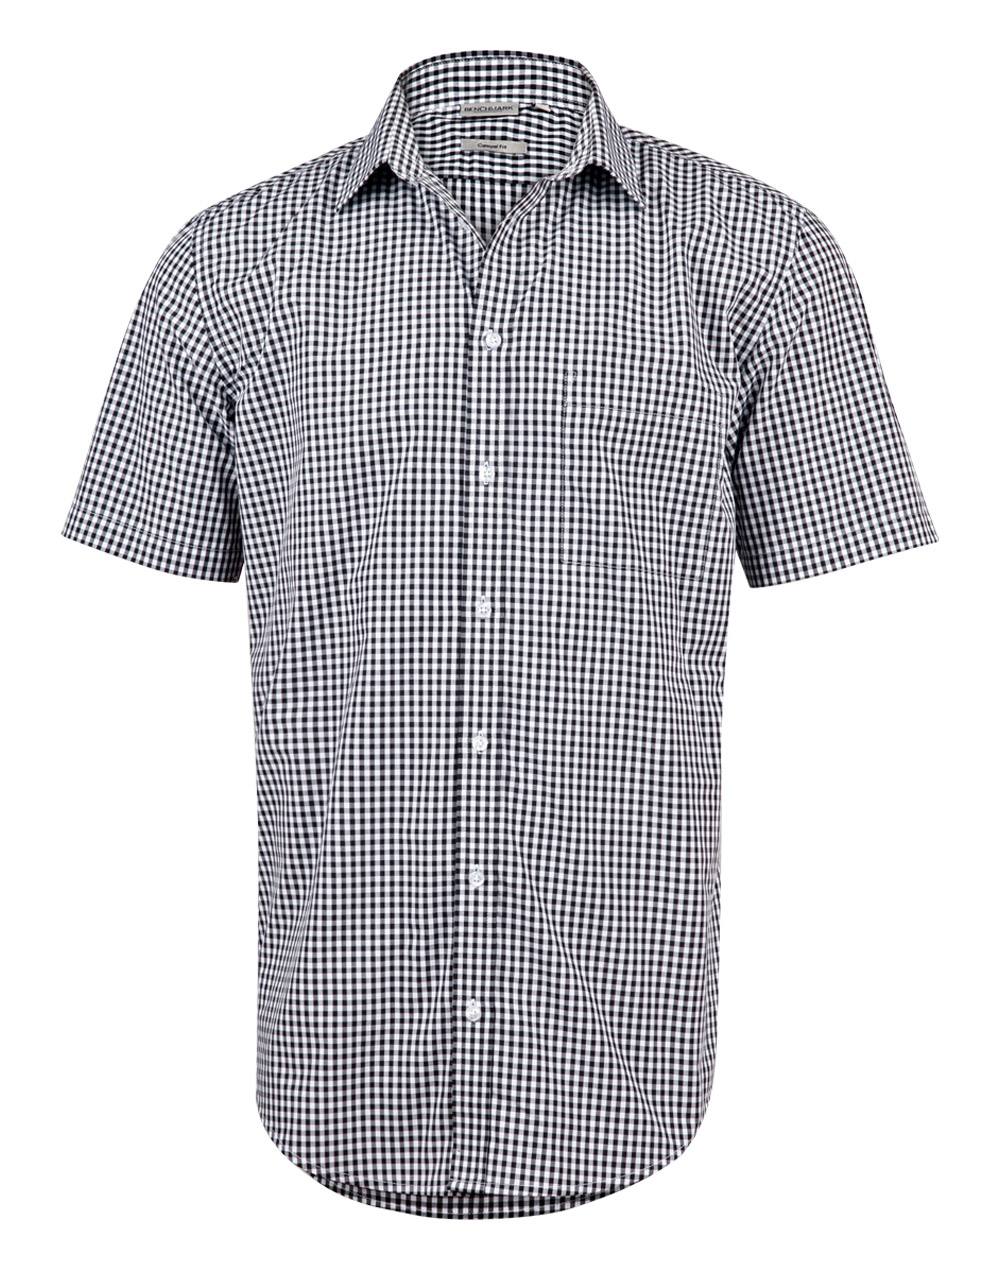 Promotional Gingham Check Short Sleeve Shirt - Bongo